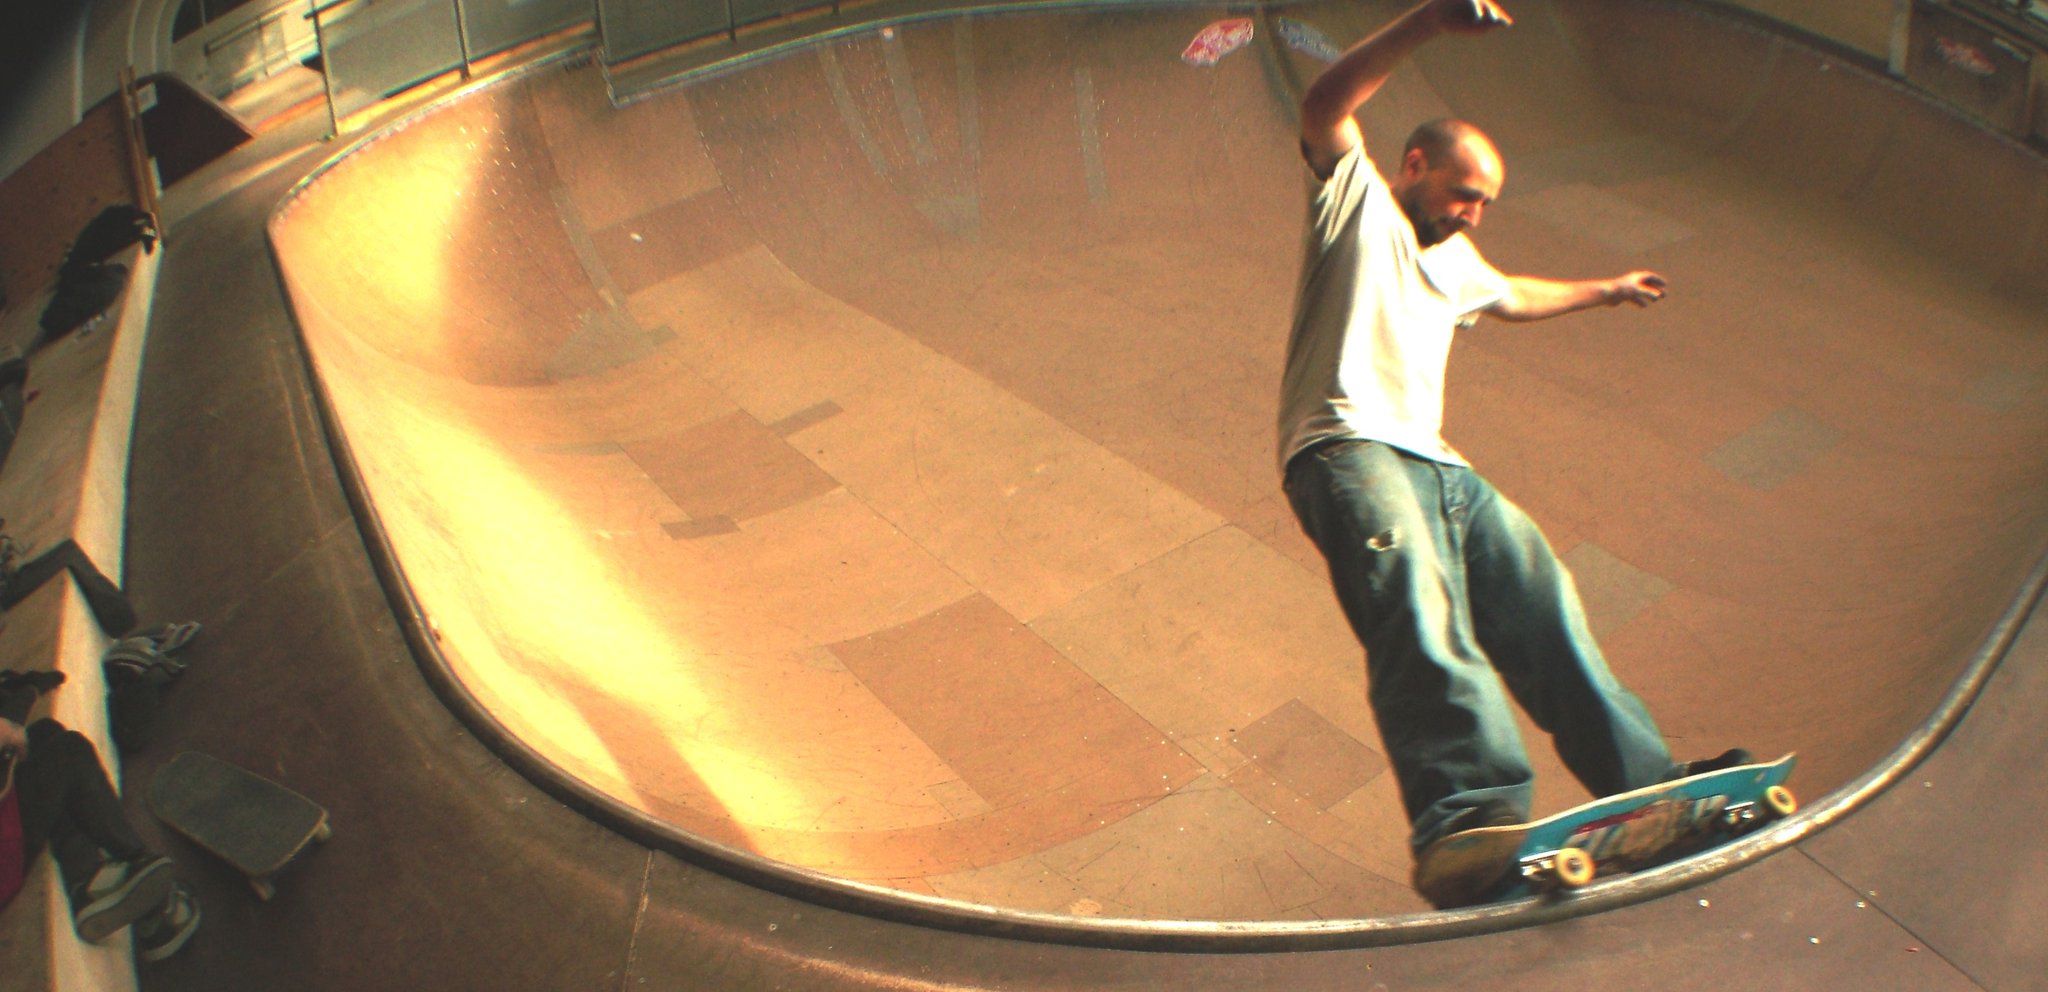 Michael Påske Jensen, carving the bowl in Copenhagen skatepark. 